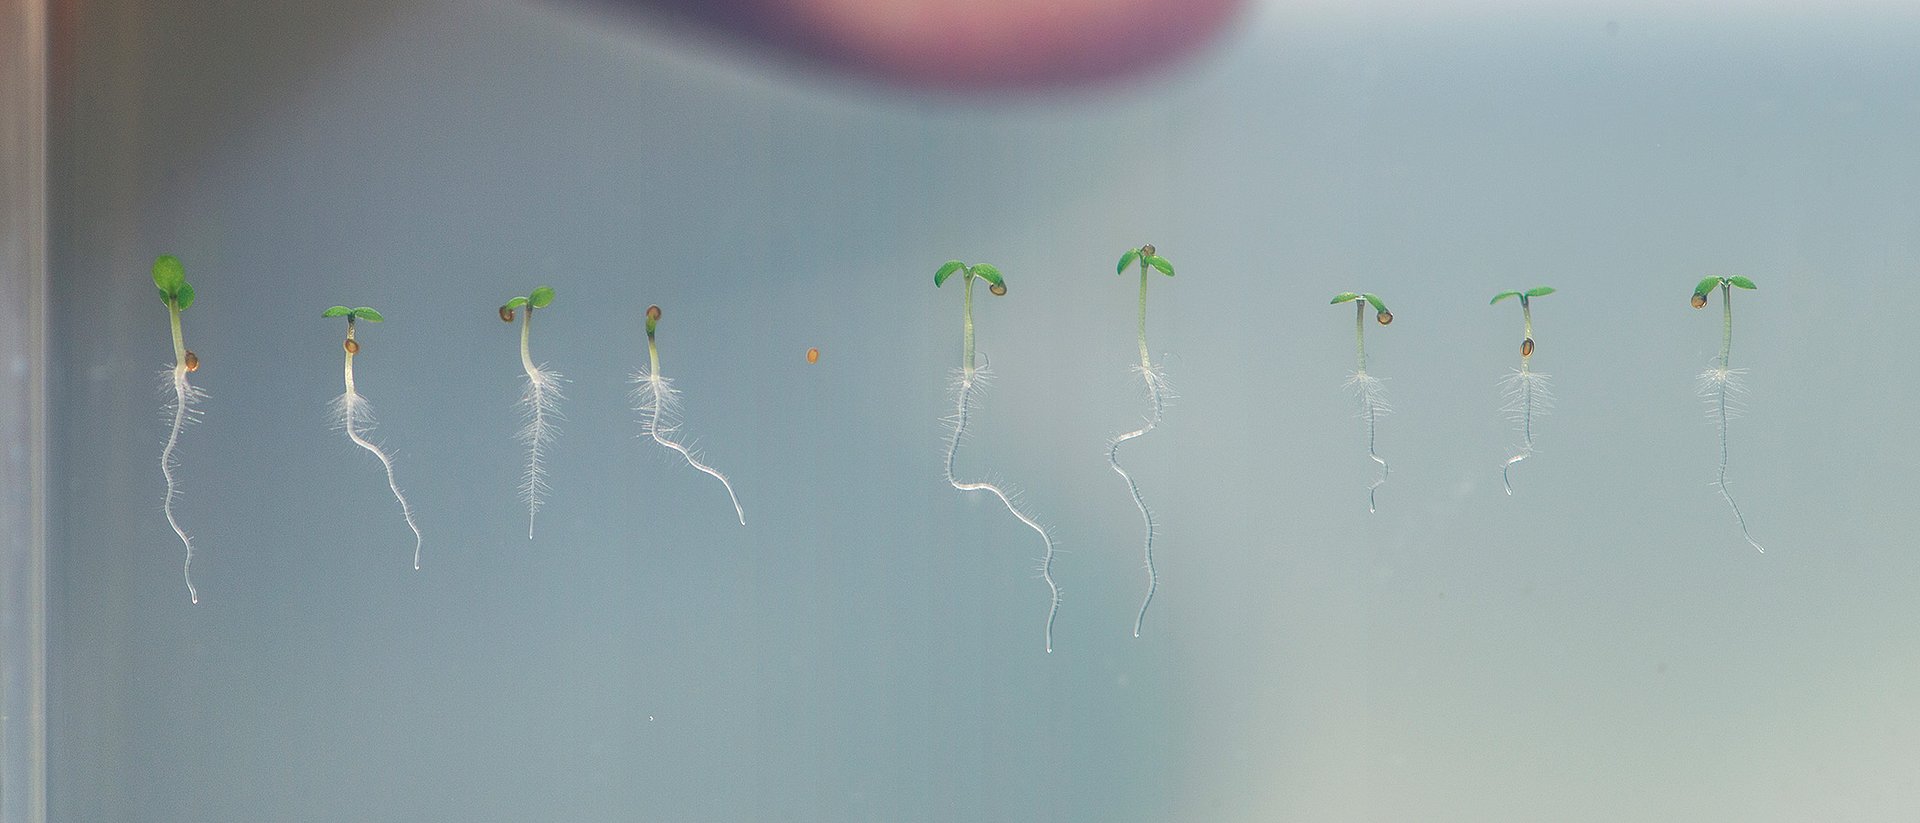 How roots grow hair - TUM